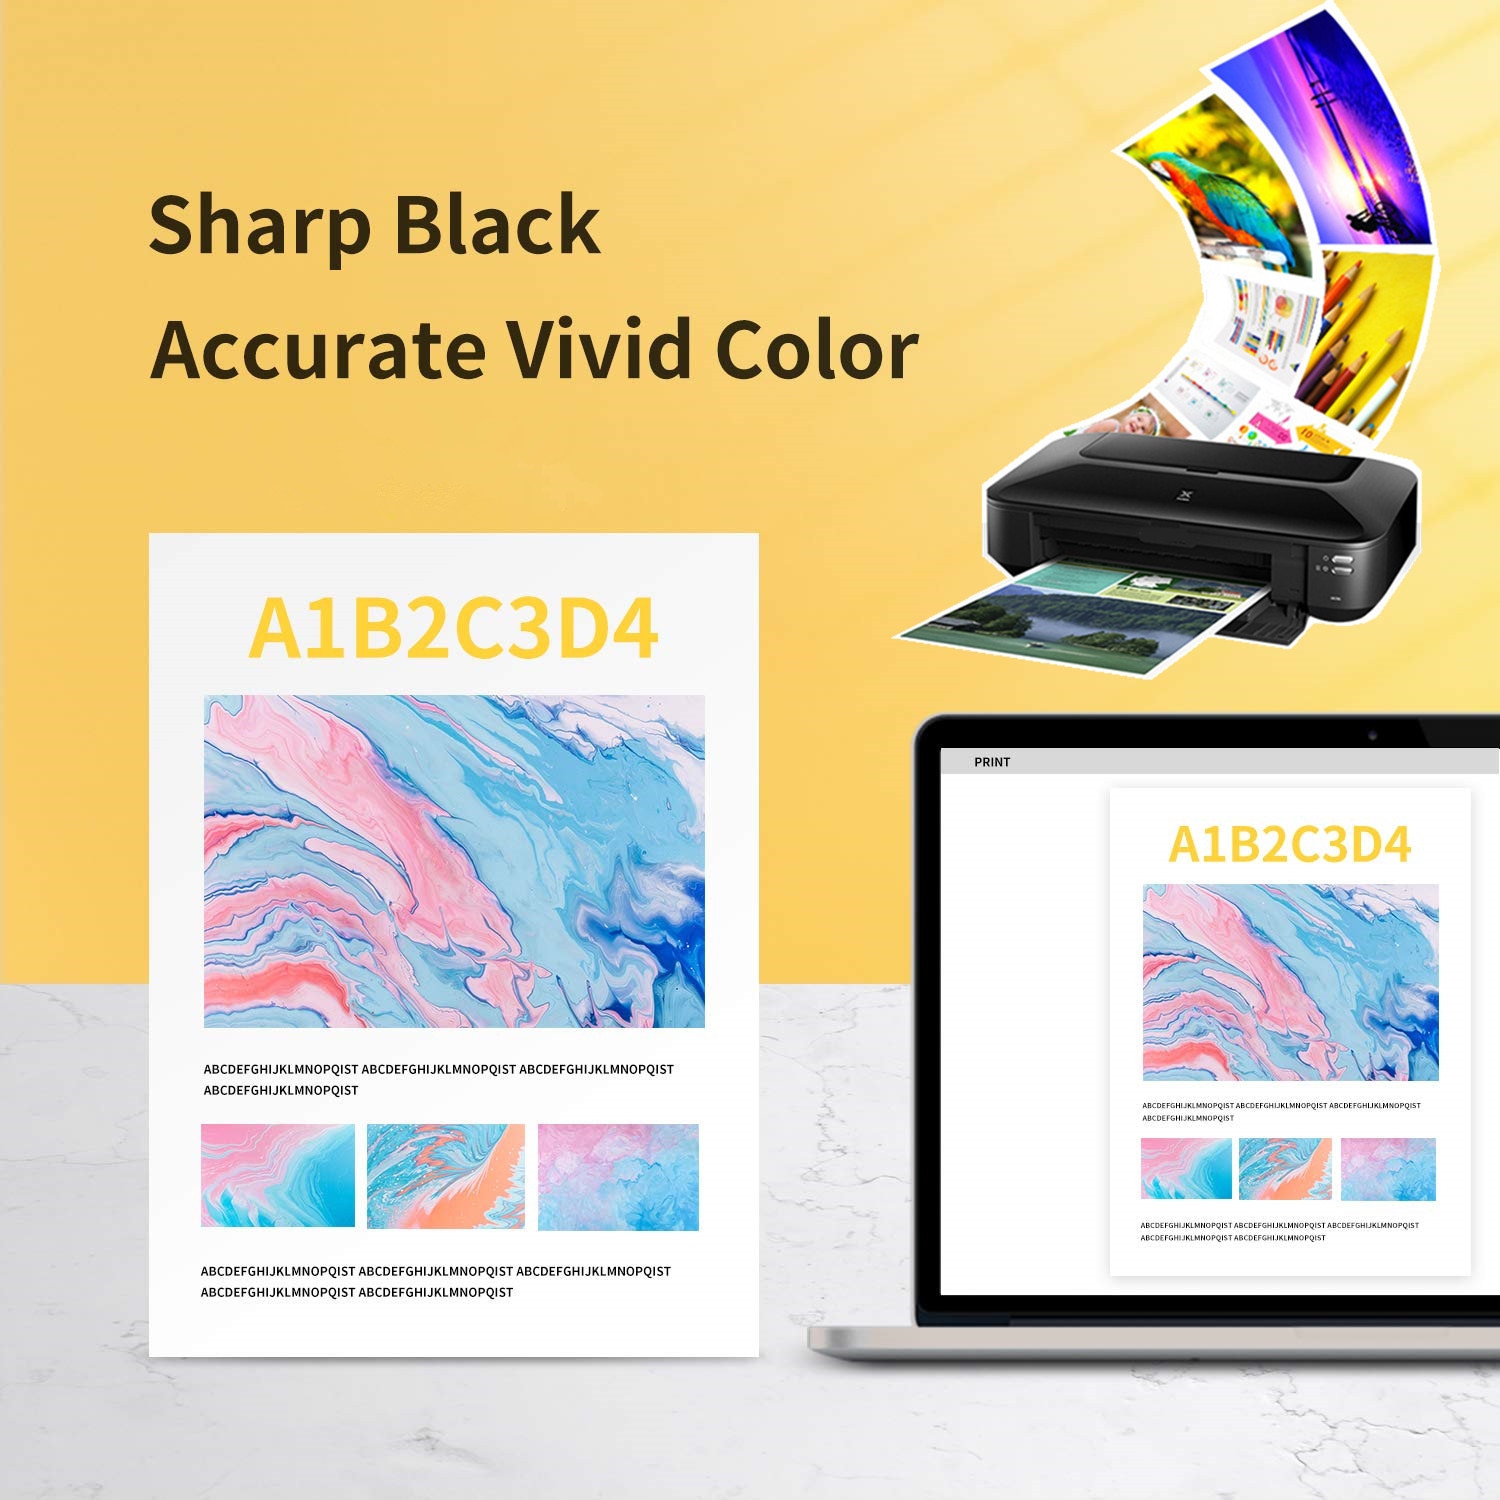 דיו למדפסת קנון Pixma צבעוני ושחור